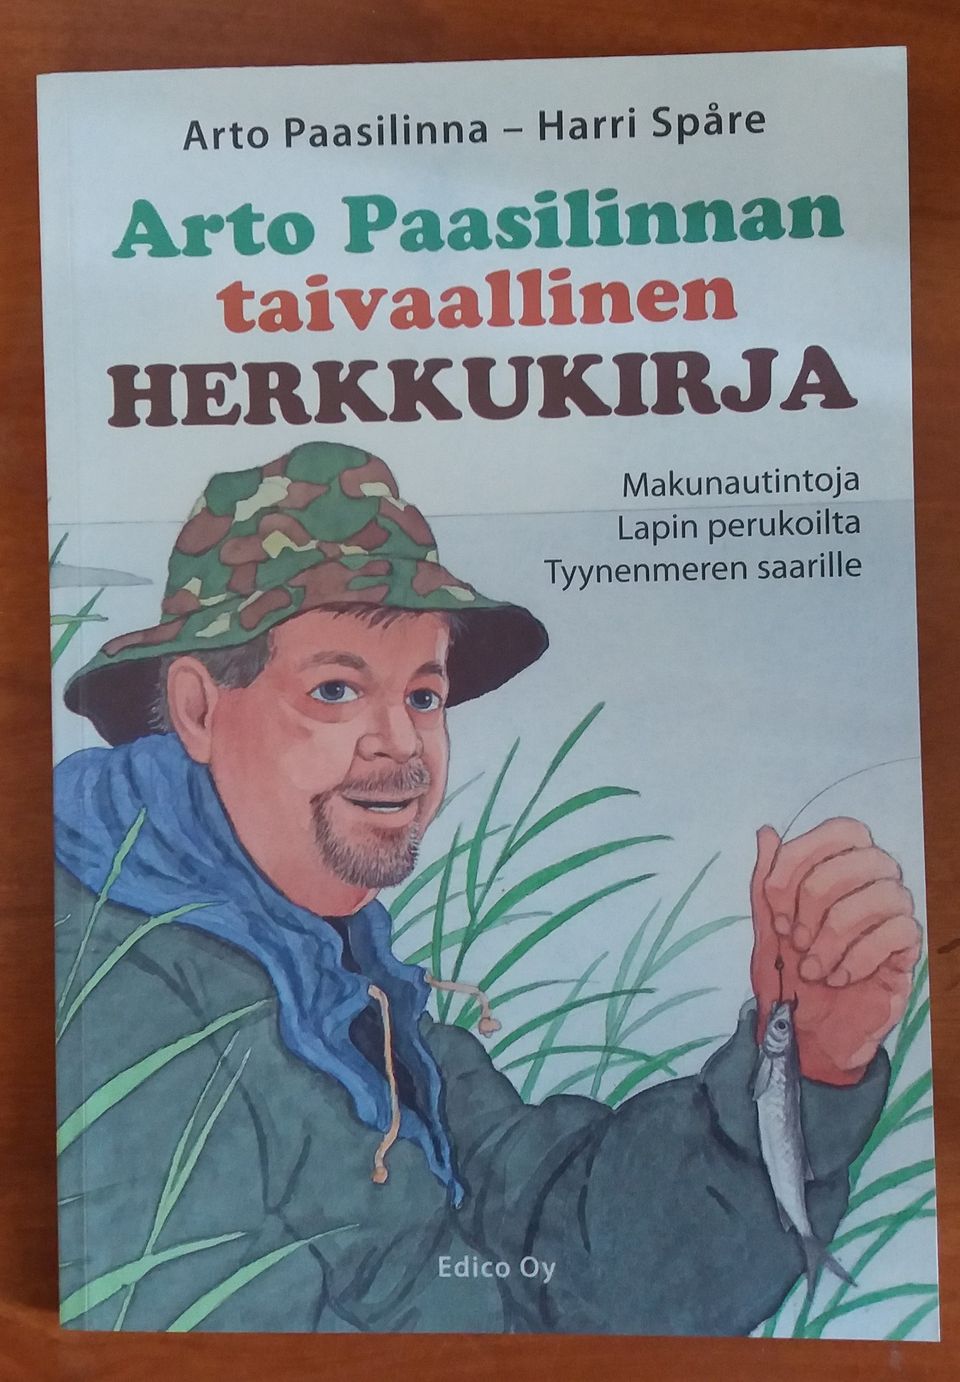 Arto Paasilinnan taivaallinen herkkukirja Edico 2006